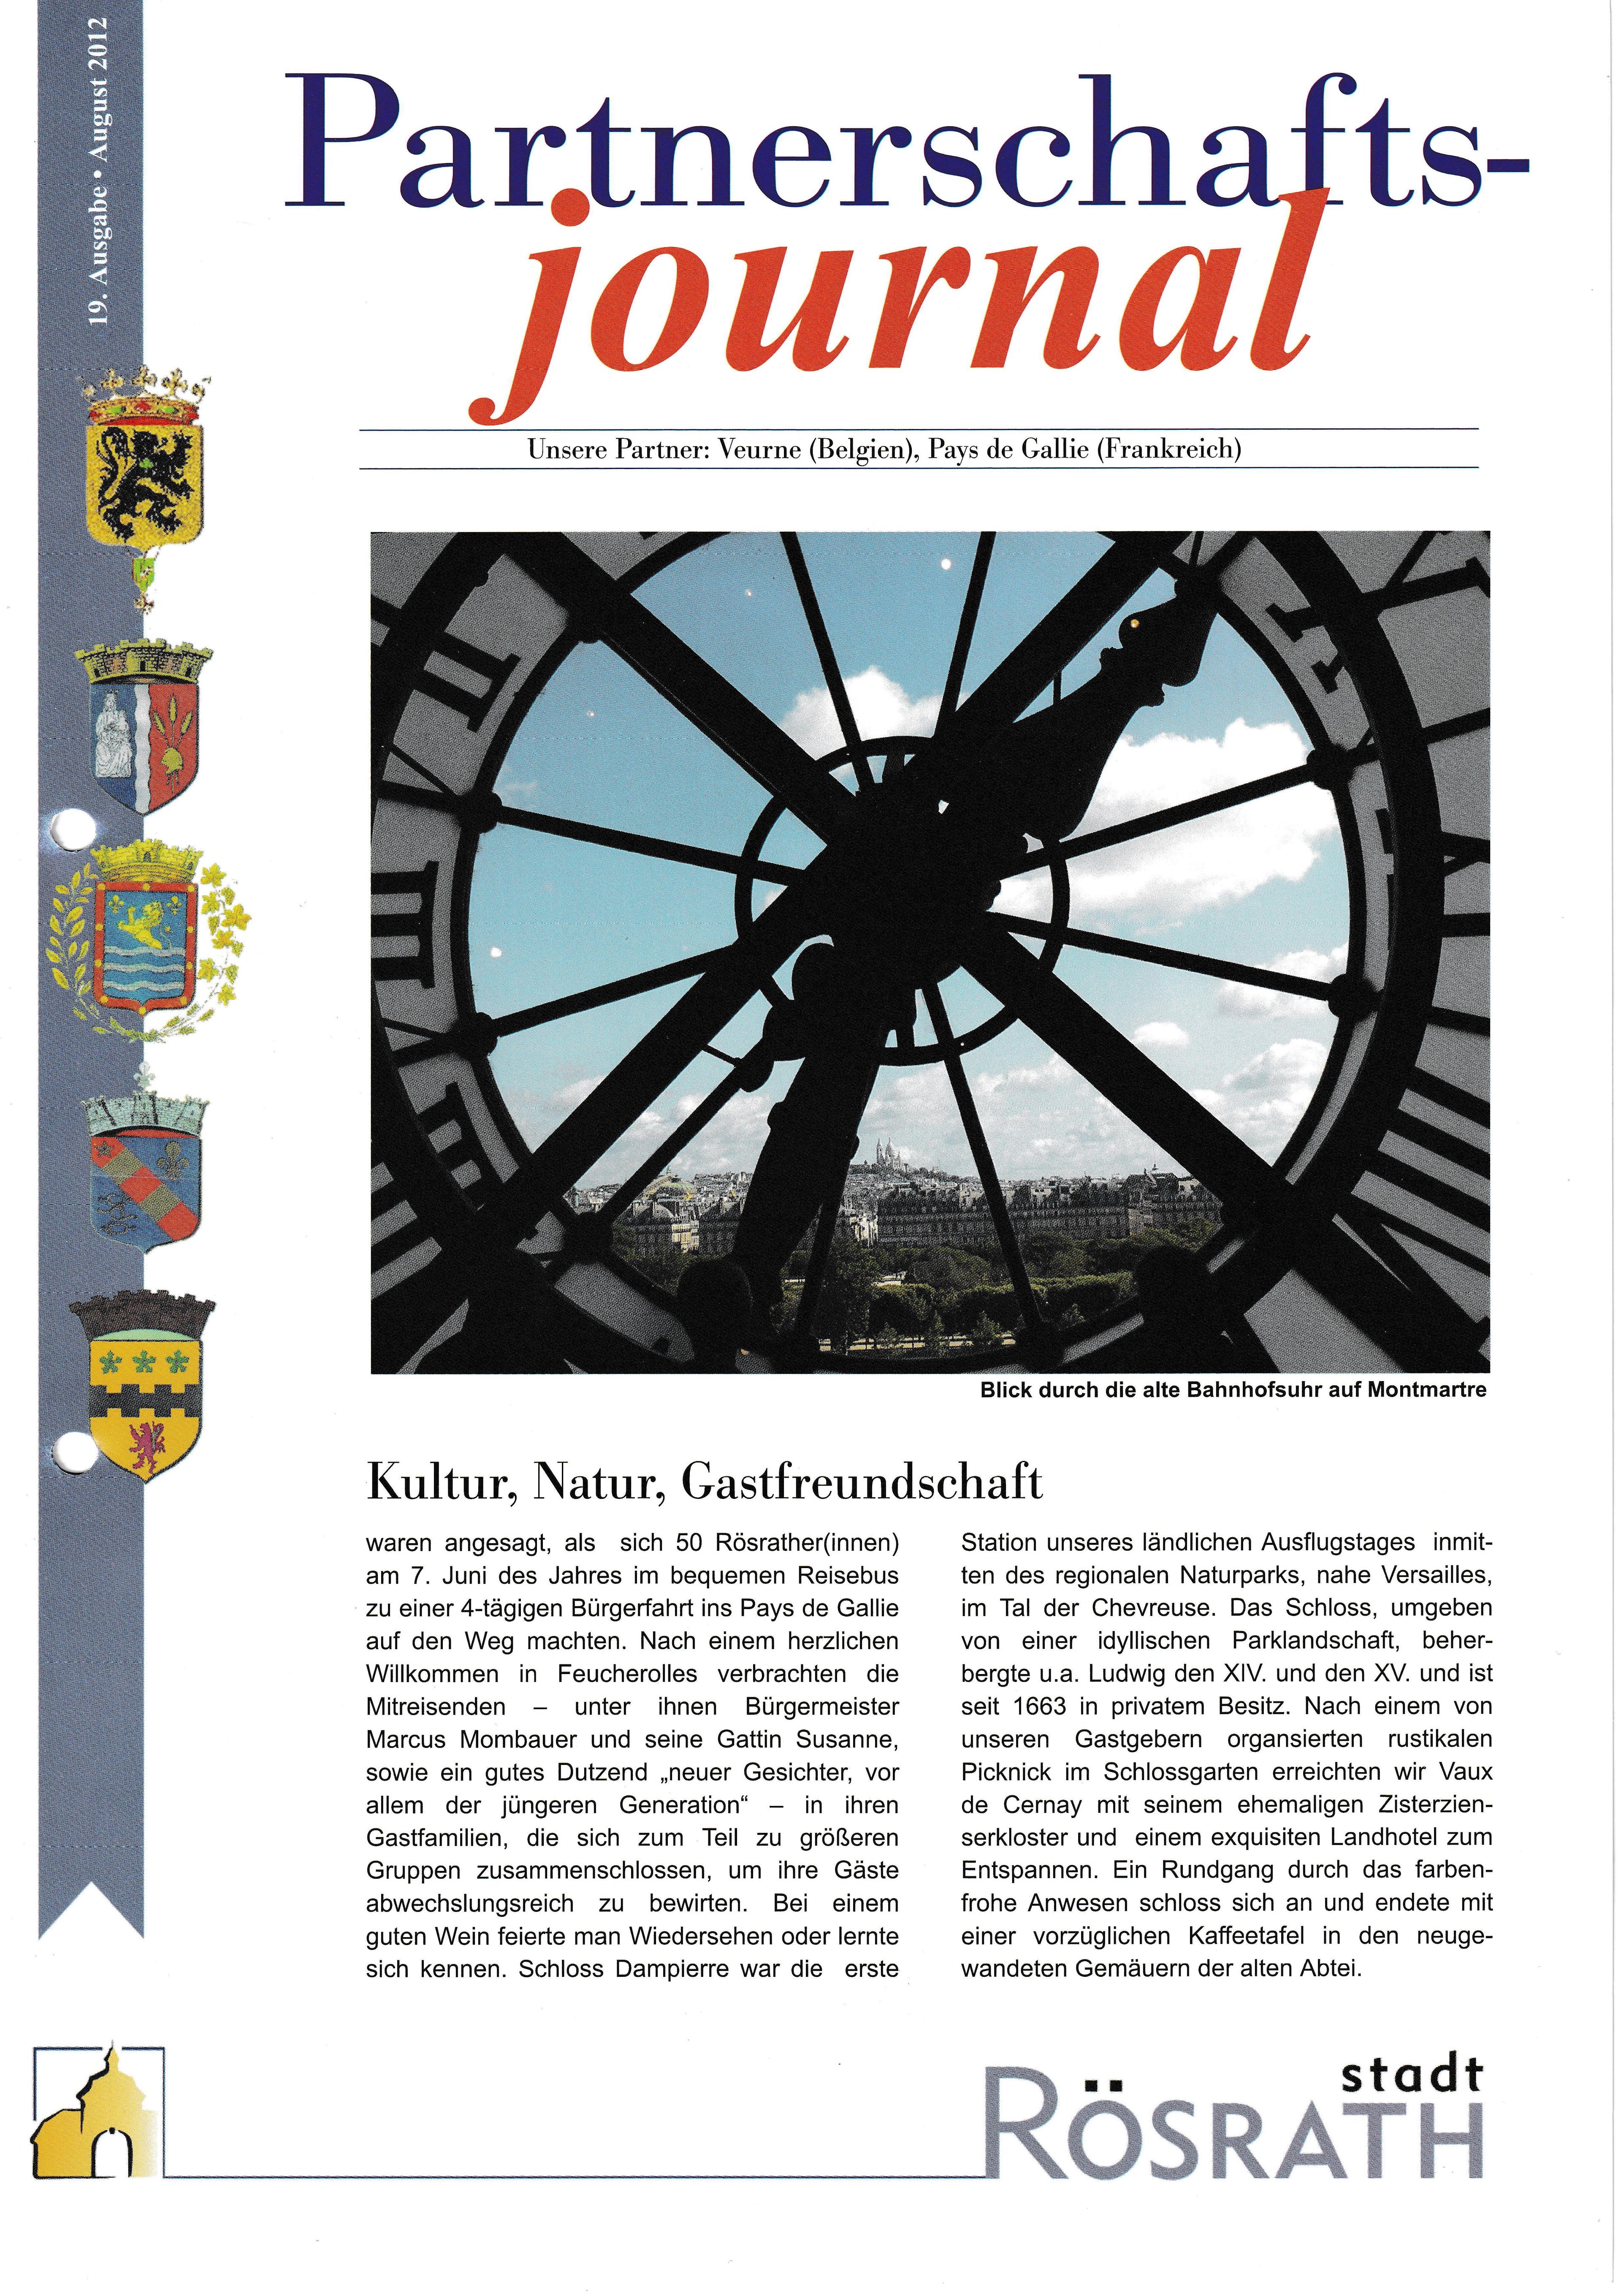 Vorschaubild für den Artikel Partnerschaftsjournal - Ausgabe 19